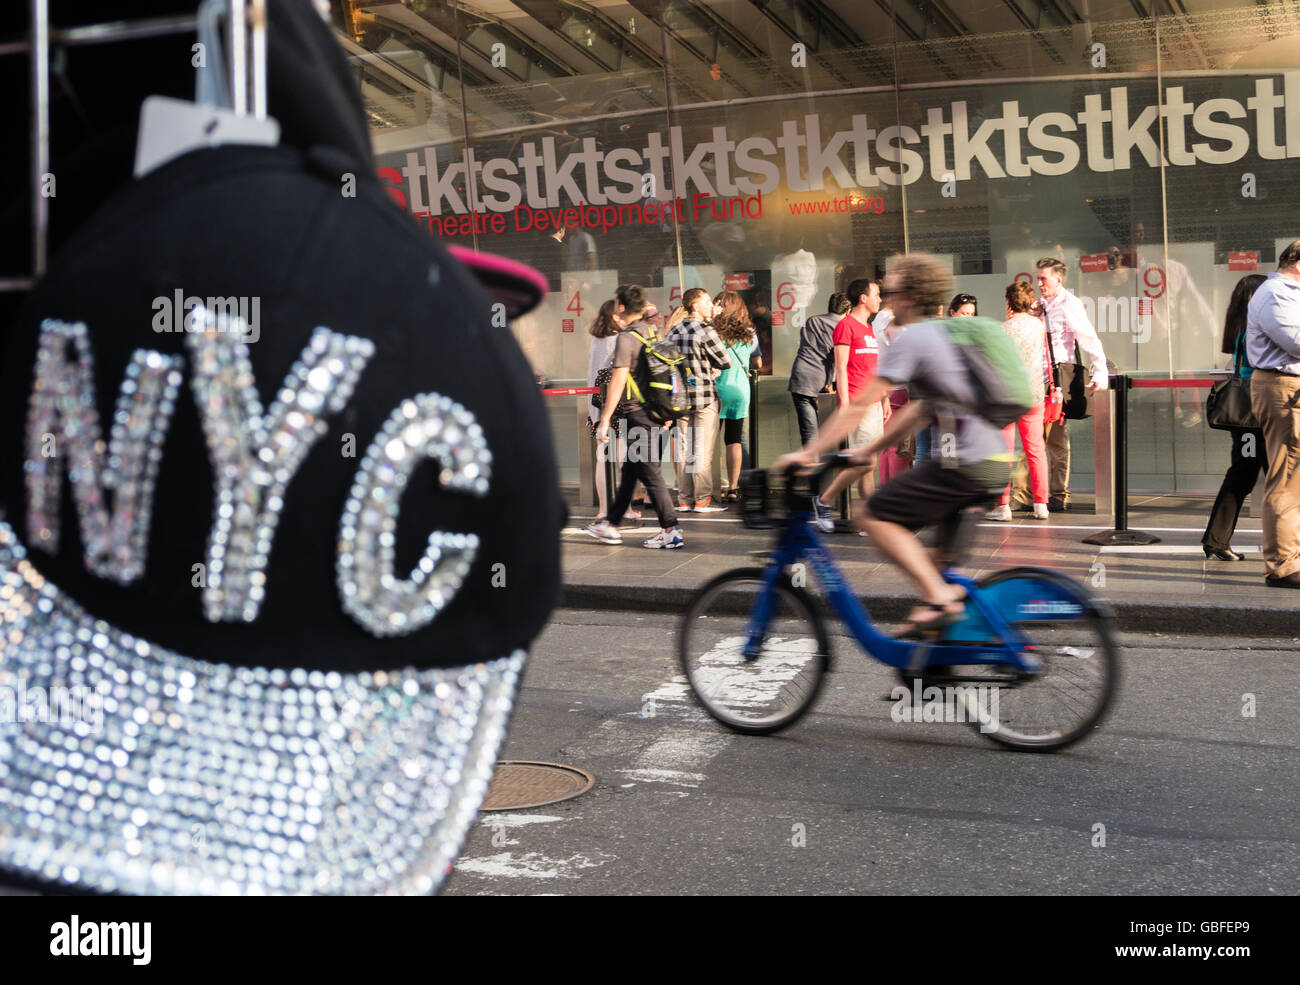 Cappellino NYC di fronte ai biglietti Tkts Discount Broadway, Duffy Square in Times Square, NYC, USA Foto Stock